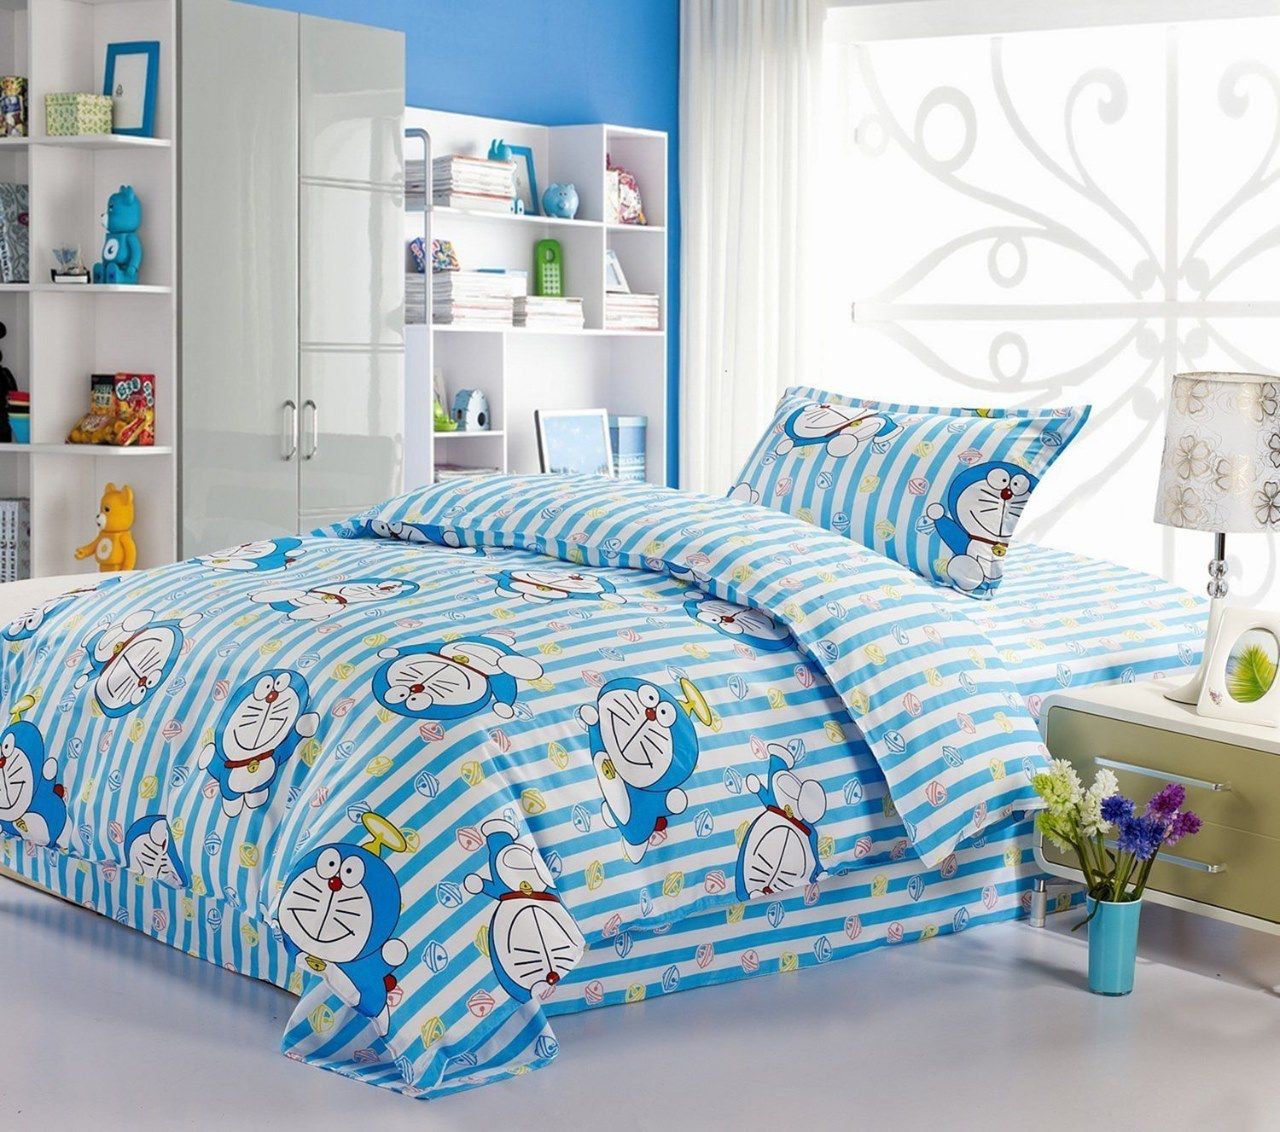 Không gian phòng ngủ Doremon màu xanh năng động, dễ thương dành cho bé yêu